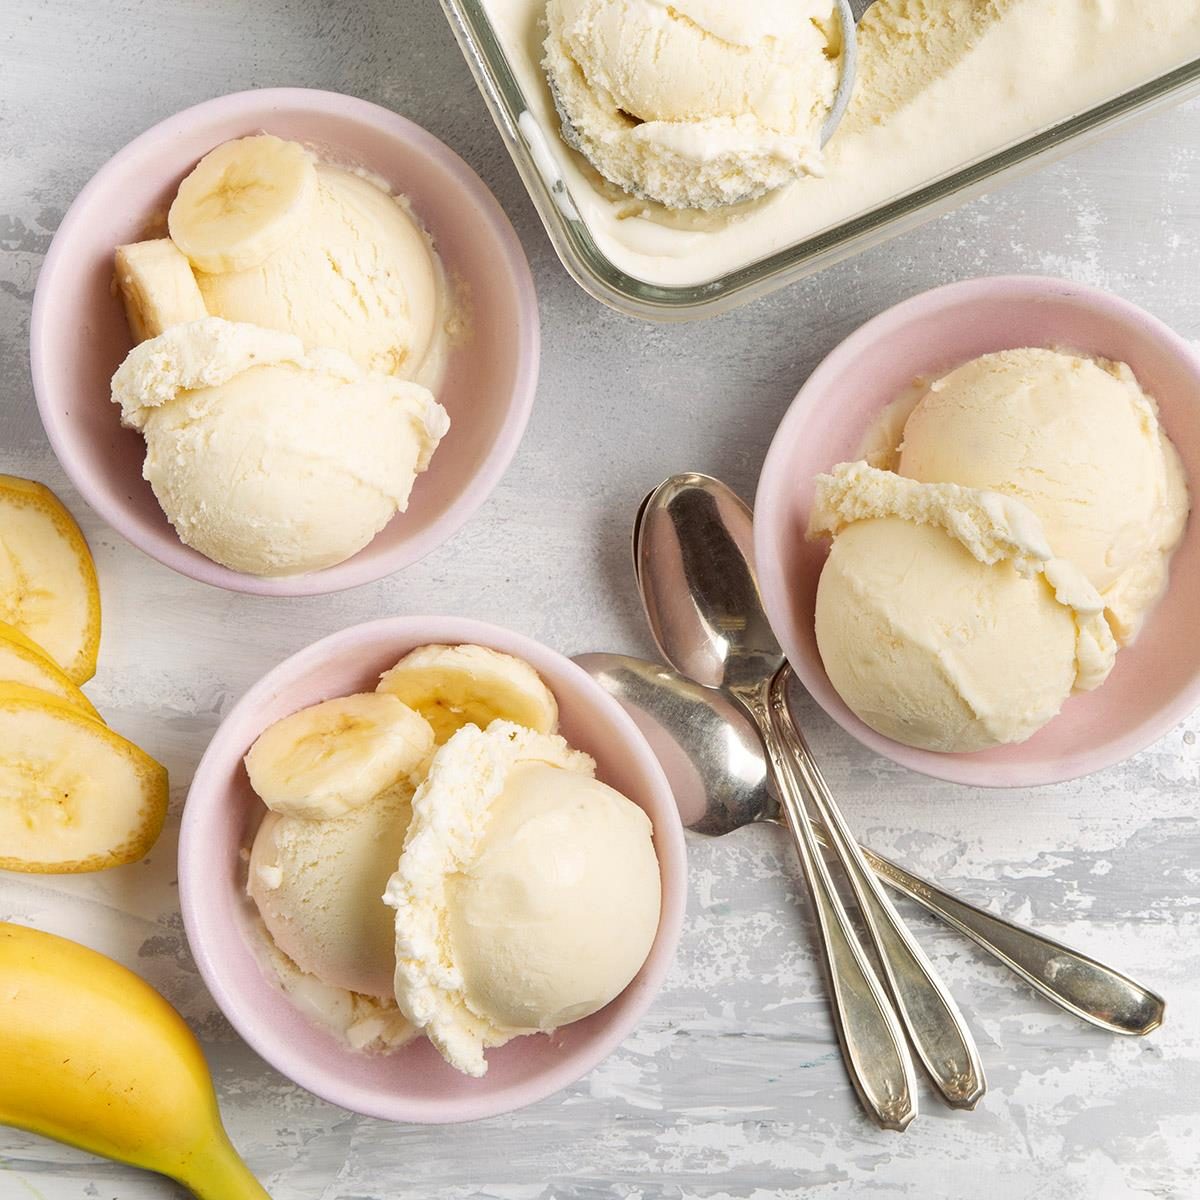 https://www.tasteofhome.com/wp-content/uploads/2018/01/Best-Banana-Ice-Cream_EXPS_FT21_38405_F_0506_1.jpg